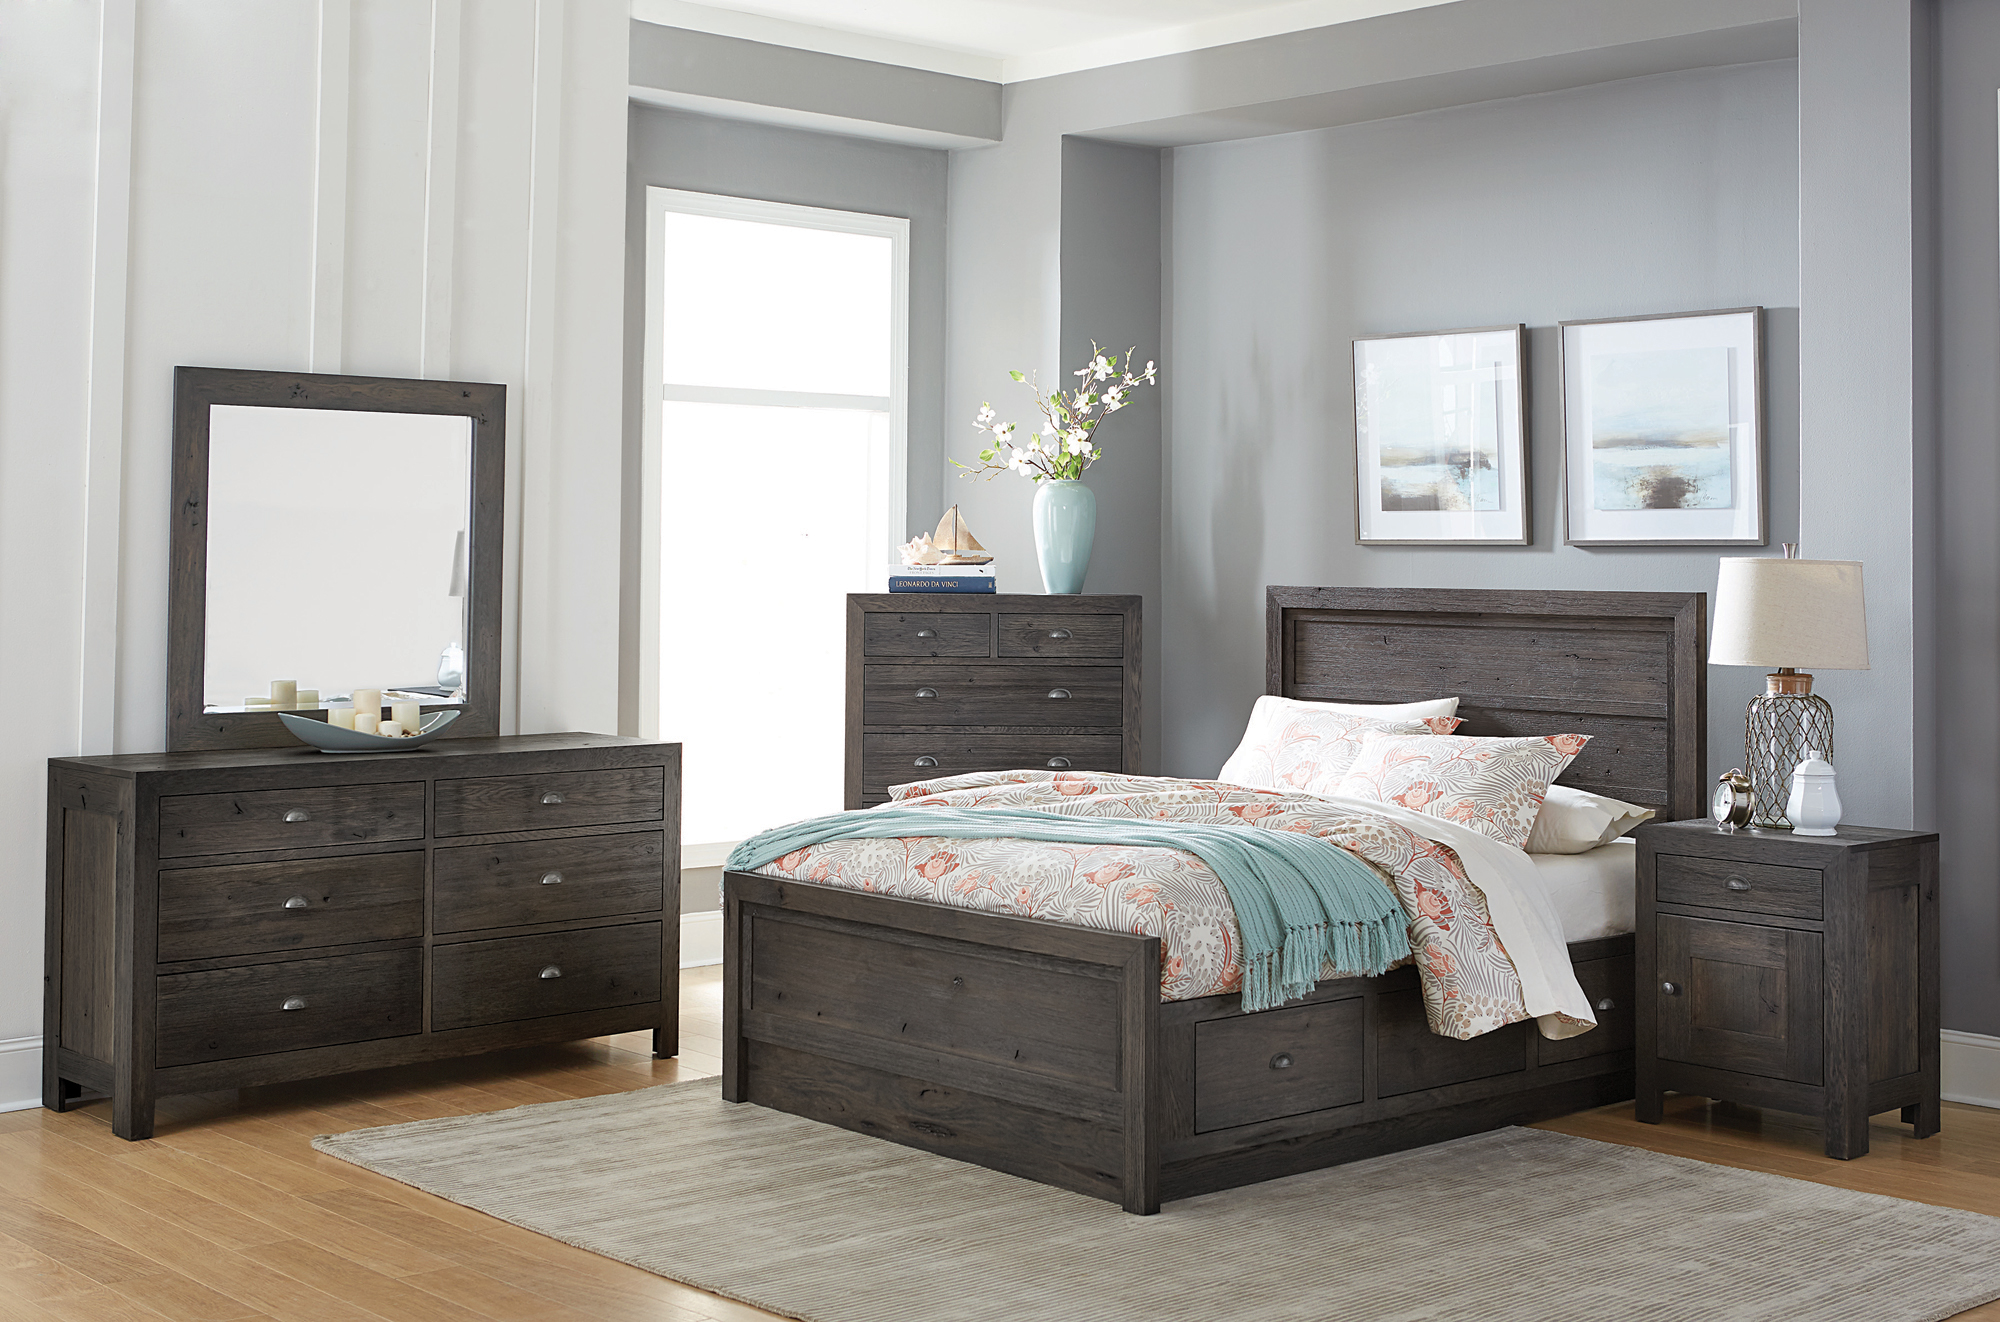 sonoma bedroom set at mor furniture